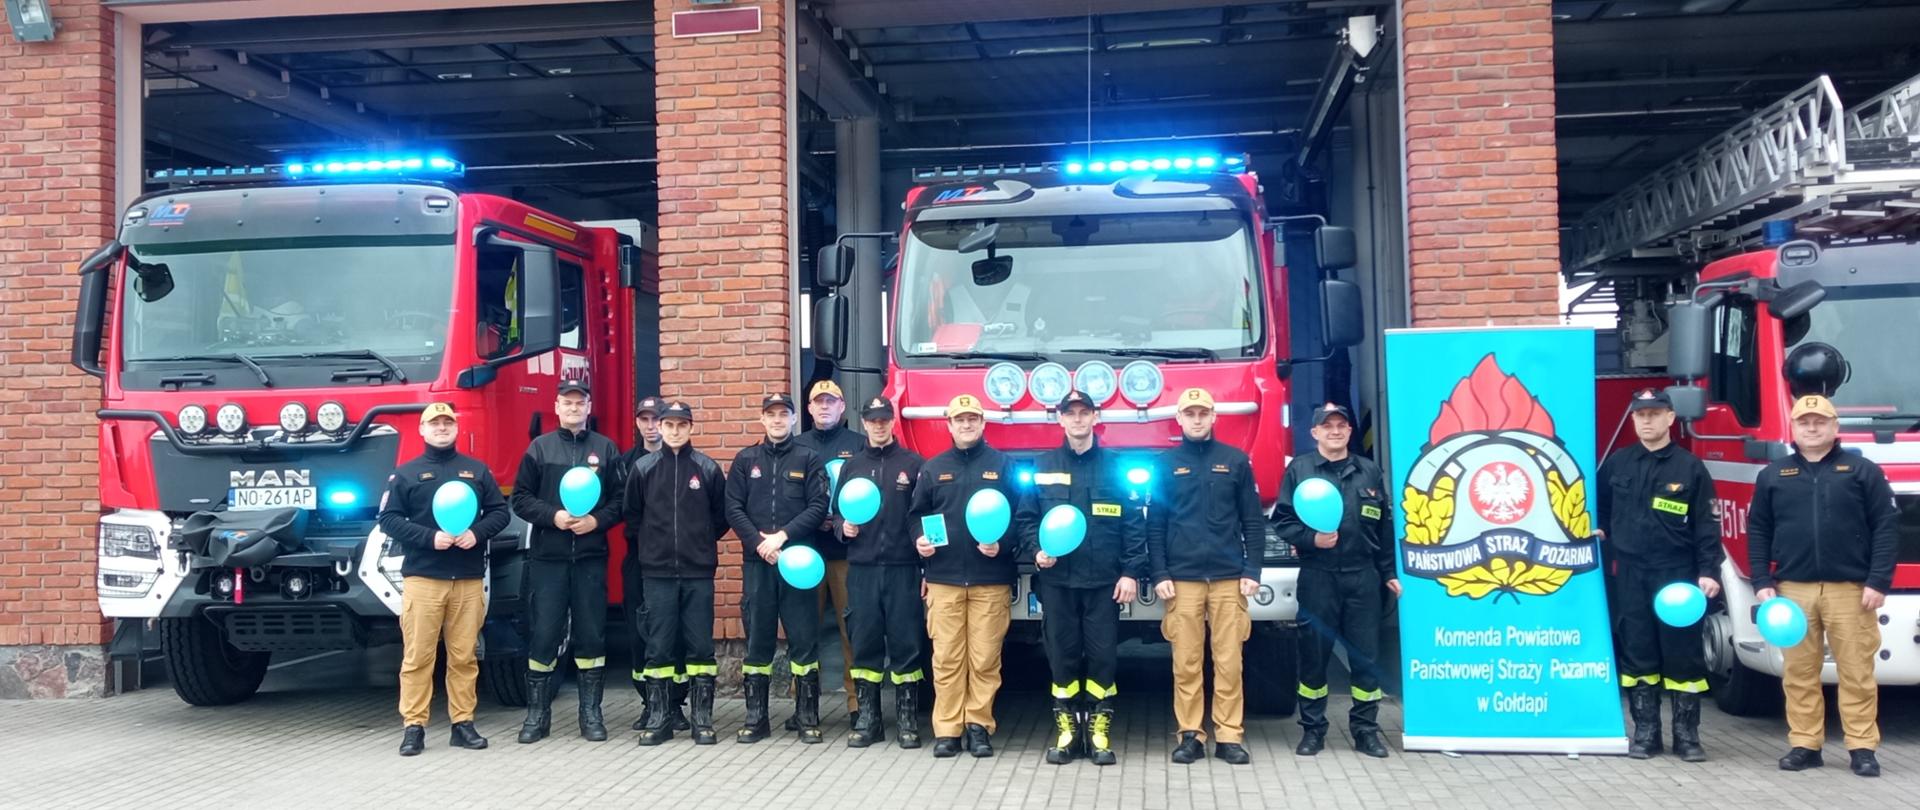 Zdjęcie przedstawia dwunastu funkcjonariuszy Komendy Powiatowej Państwowej Straży Pożarnej w Gołdapi wyposażonych w niebieskie akcenty (balony) na tle pojazdów pożarniczych z włączonymi niebieskimi sygnałami świetlnymi, solidarnych z osobami ze spektrum autyzmu